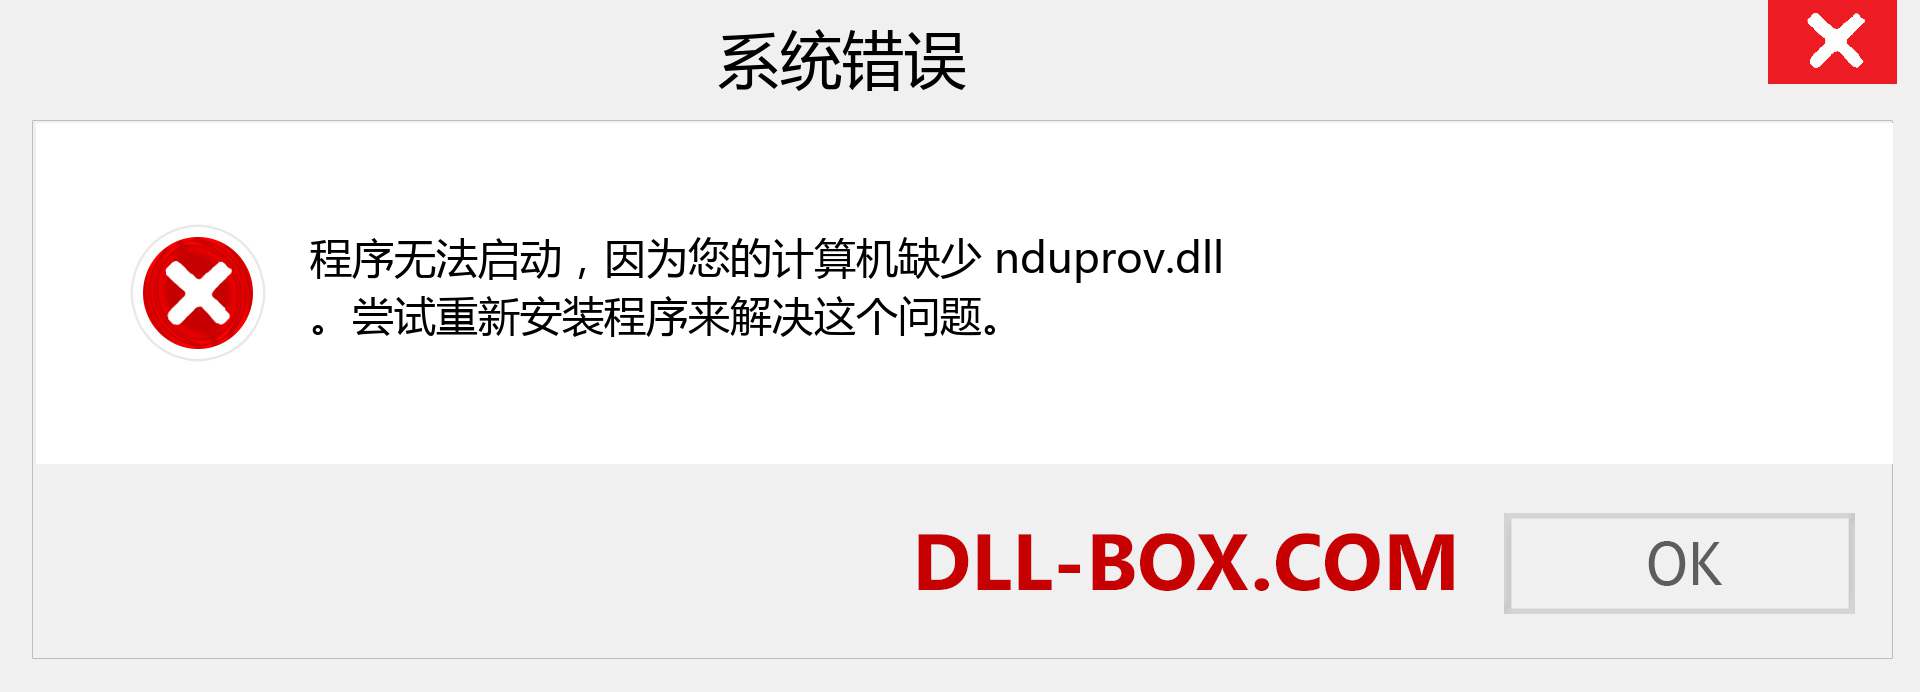 nduprov.dll 文件丢失？。 适用于 Windows 7、8、10 的下载 - 修复 Windows、照片、图像上的 nduprov dll 丢失错误